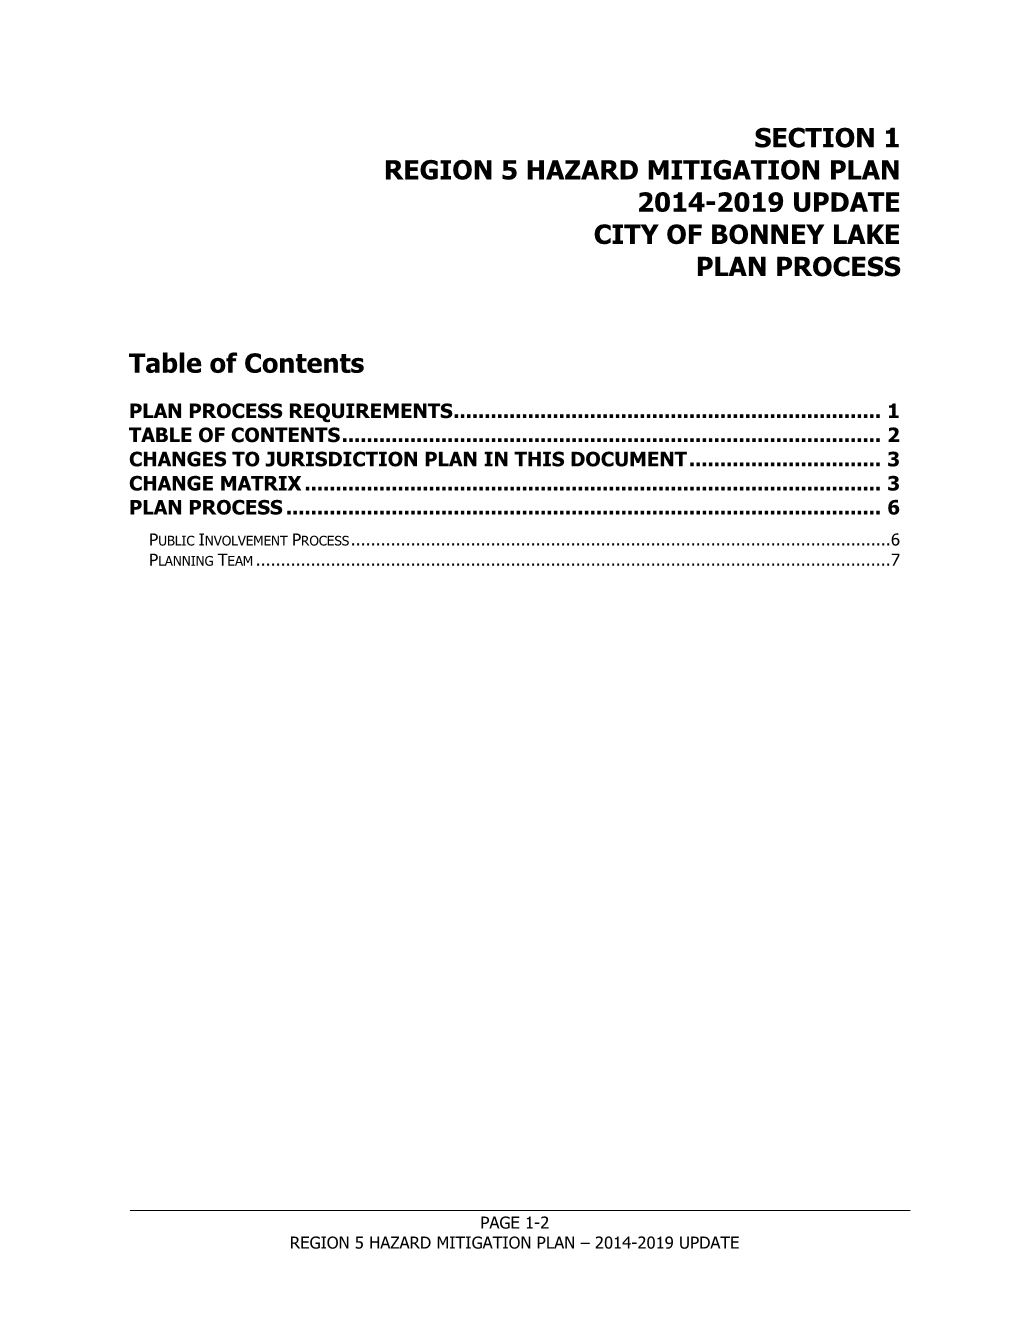 Hazard Mitigation Plan 2014-2019 Update City of Bonney Lake Plan Process